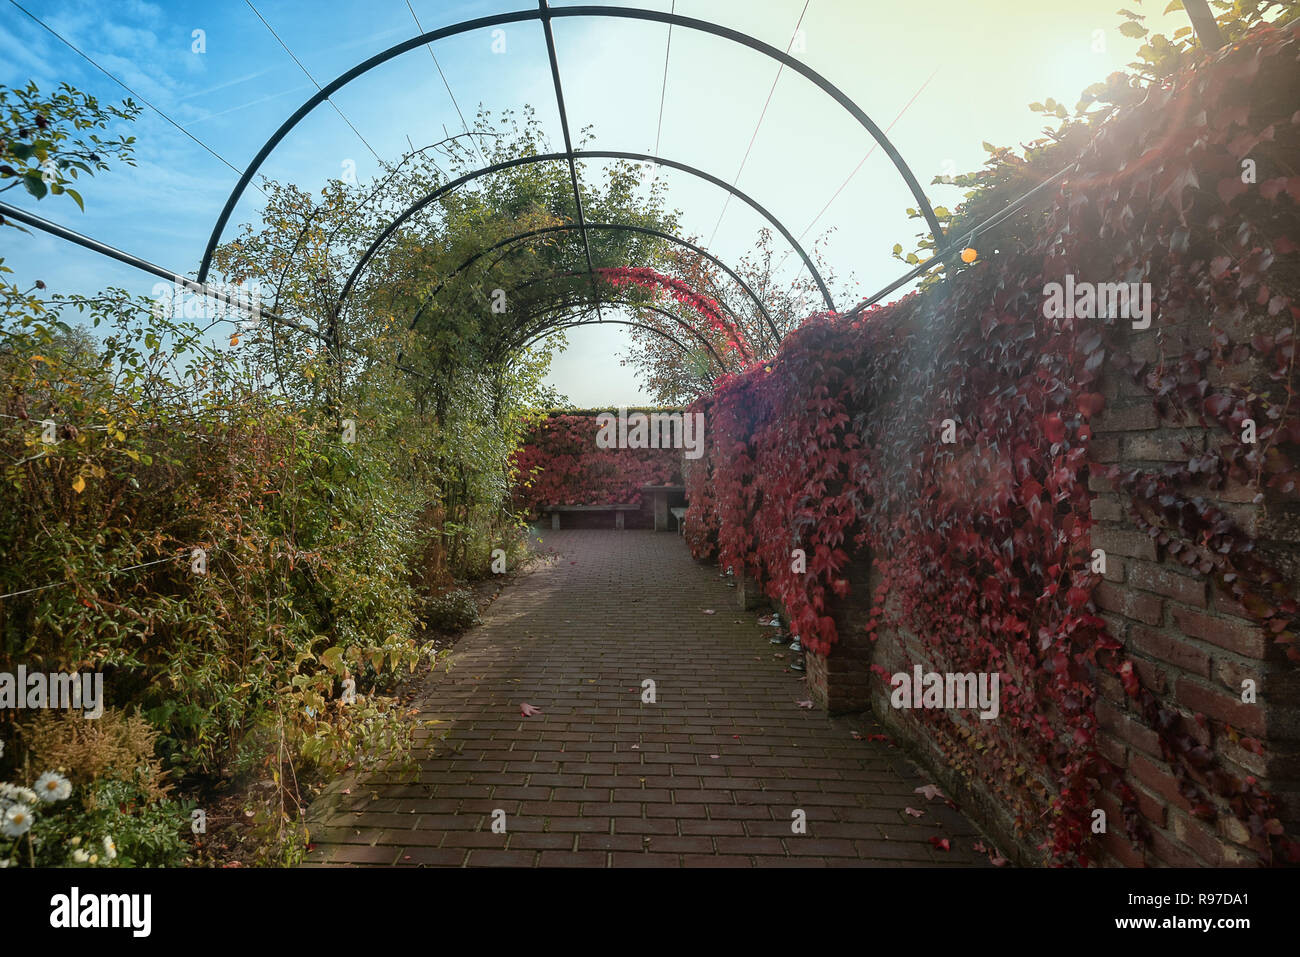 Mur envahi par un réducteur dans de belles couleurs d'automne dans un jardin quelque part dans les Pays-Bas Banque D'Images